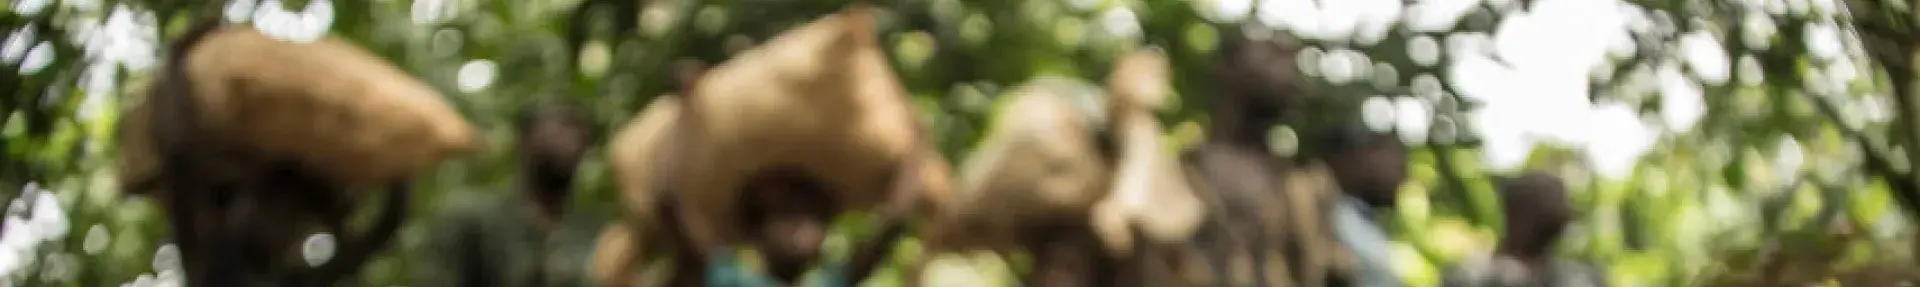 Image: child laborers in cocoa field. Topic: Tell Godiva: End Child Labor